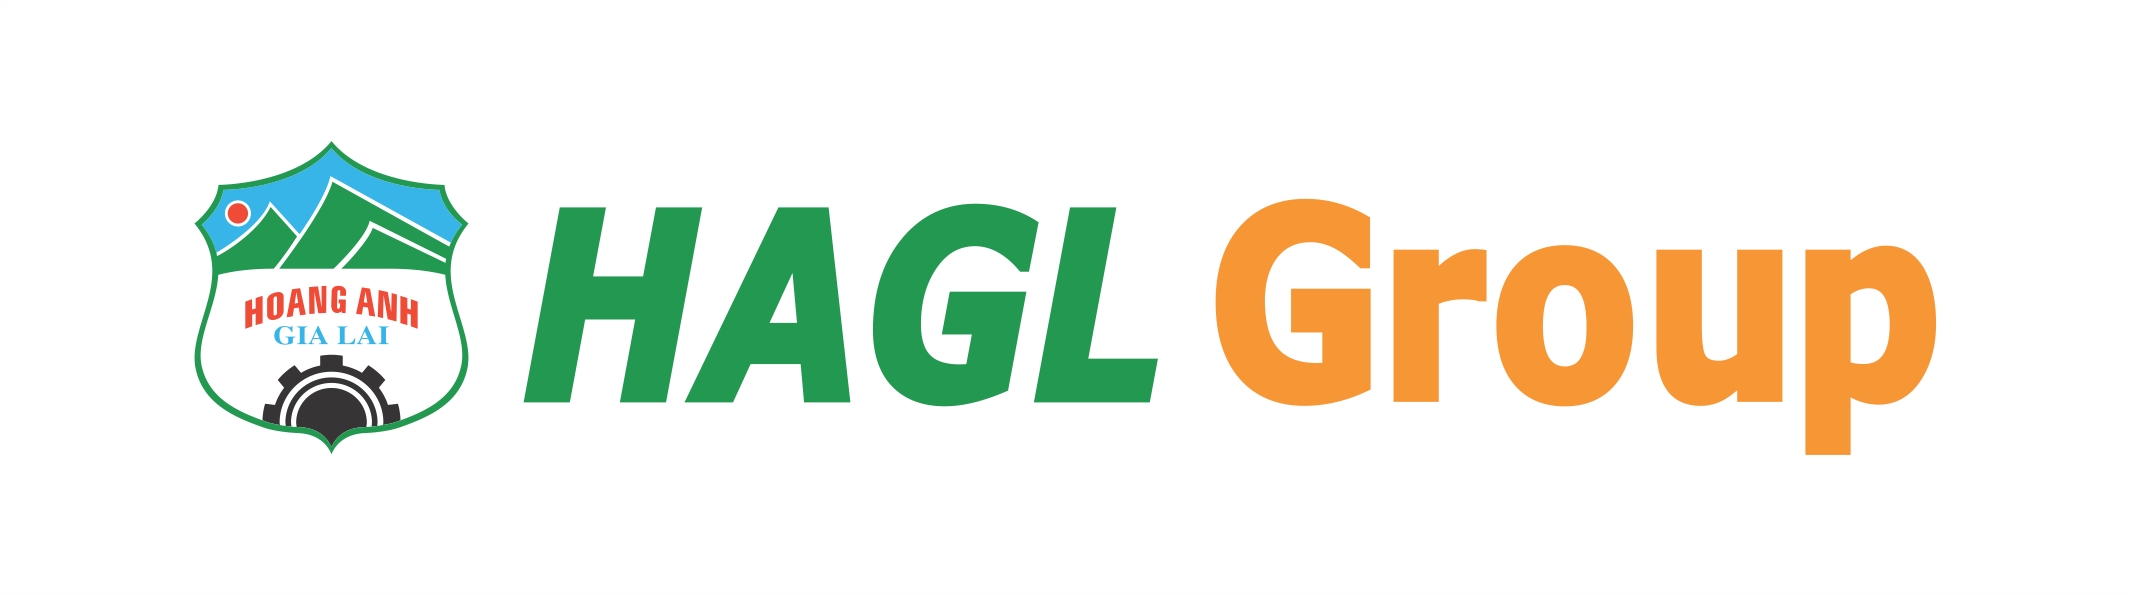 Hagl Logo Png Hdpng.com 2131 - Hagl, Transparent background PNG HD thumbnail